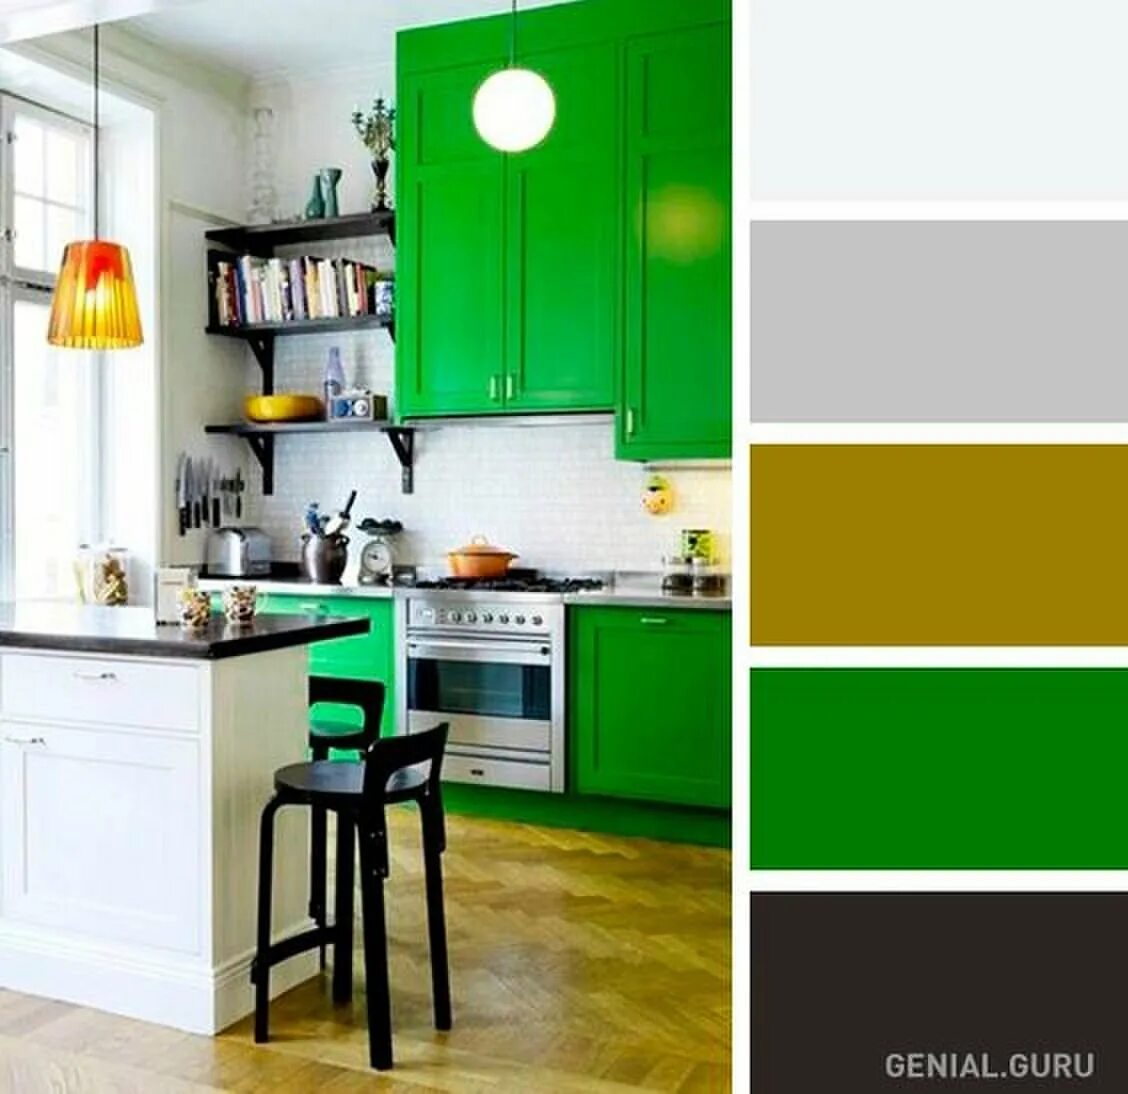 Какие цвета сочетаются на кухне. Цветовая гамма в интерьере кухни. Кухня зеленого цвета. Сочетание цветов в интерьере кухни. Сочетание зеленых оттенков в интерьере.